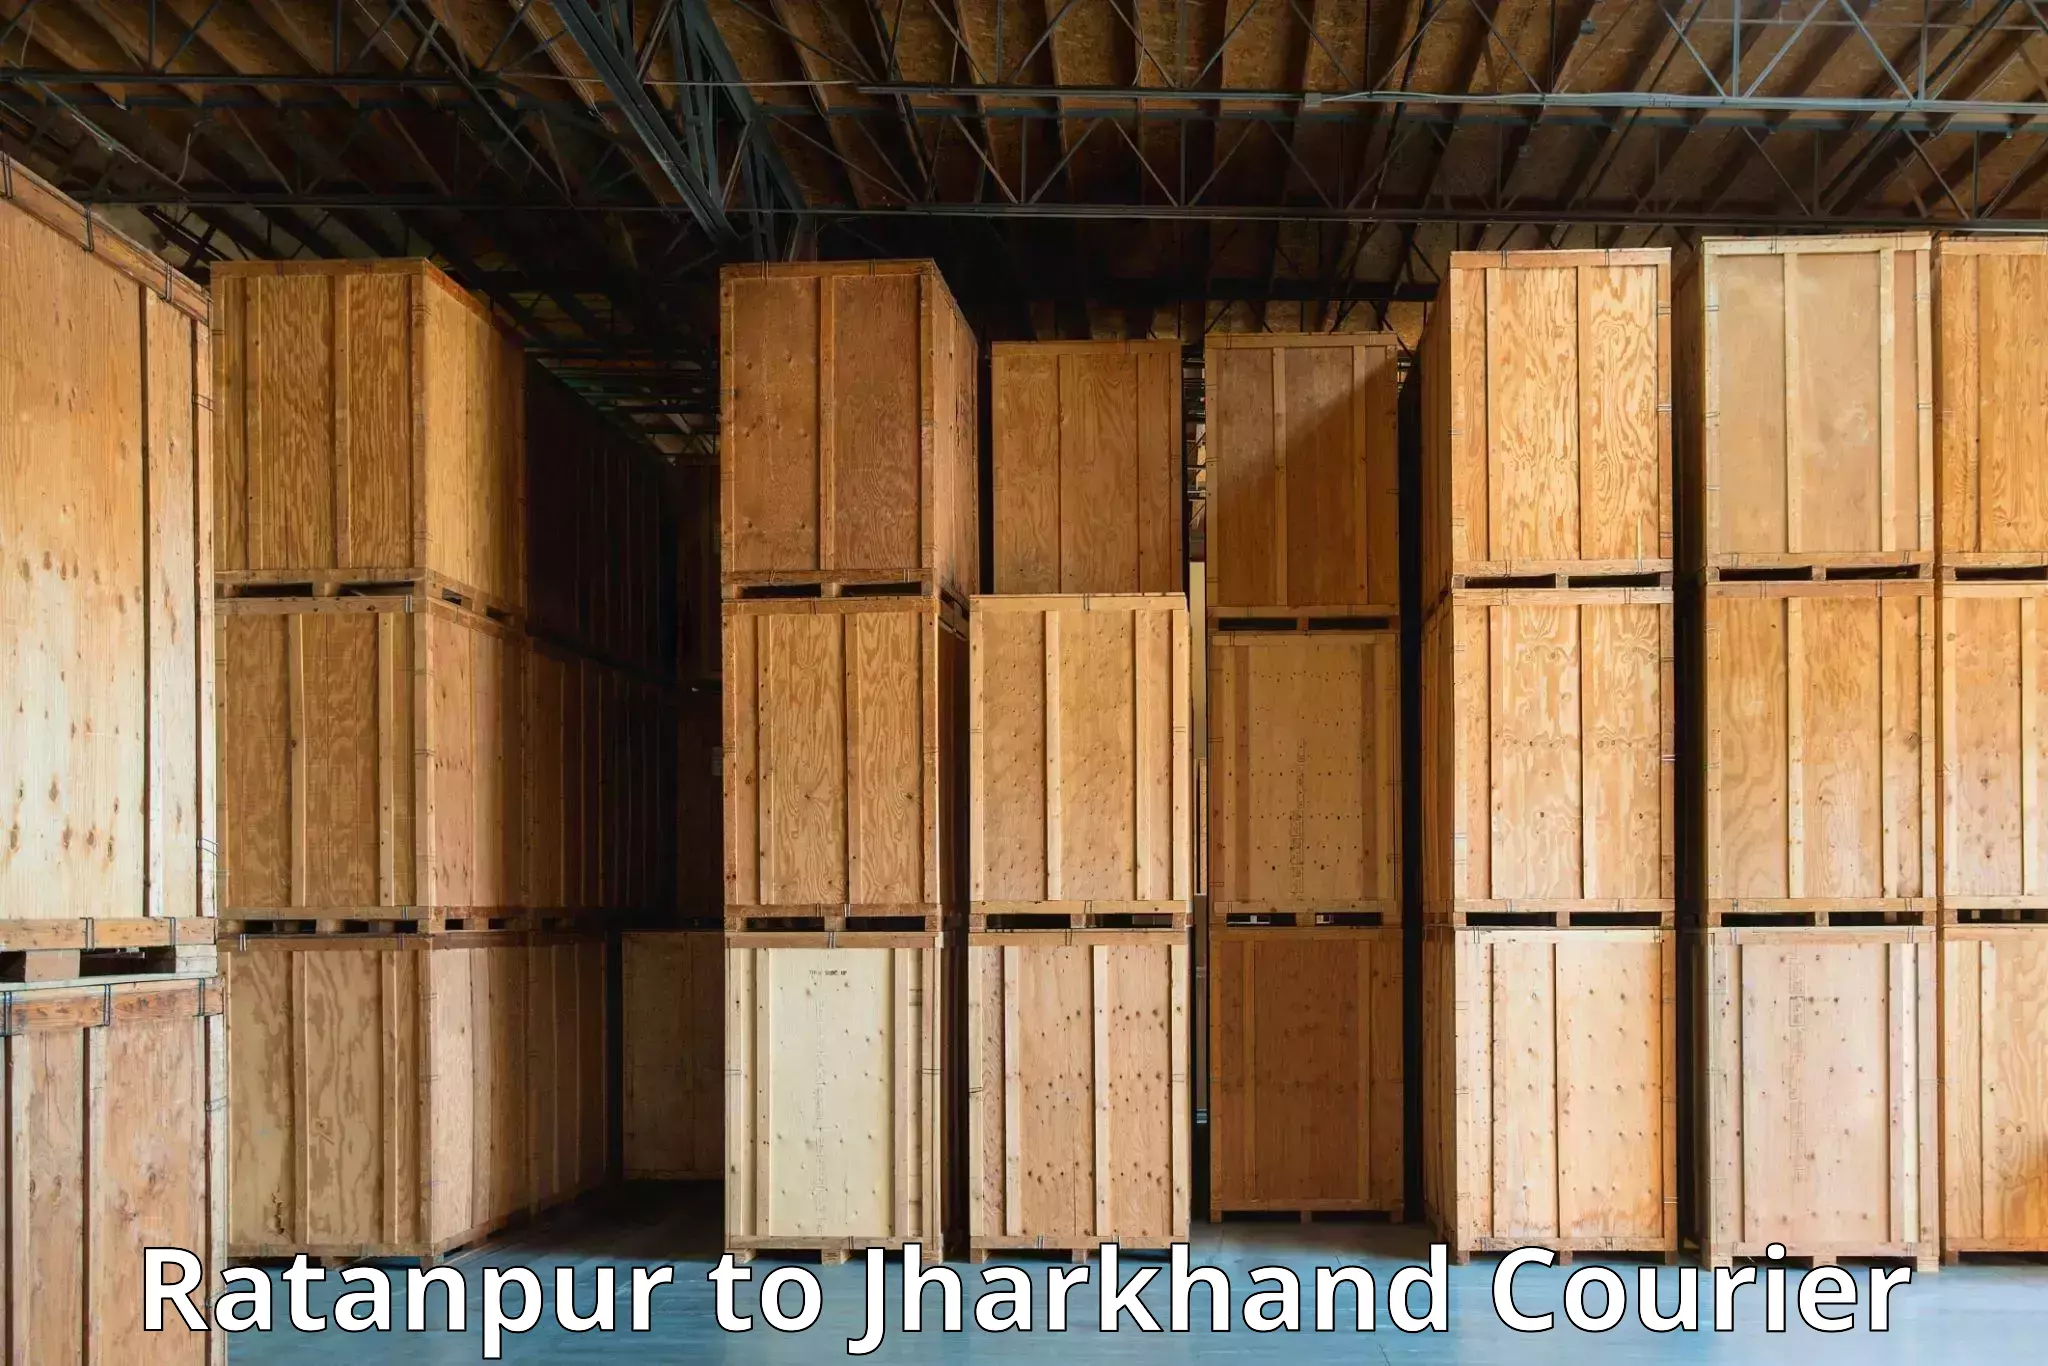 Efficient parcel service Ratanpur to Maheshpur